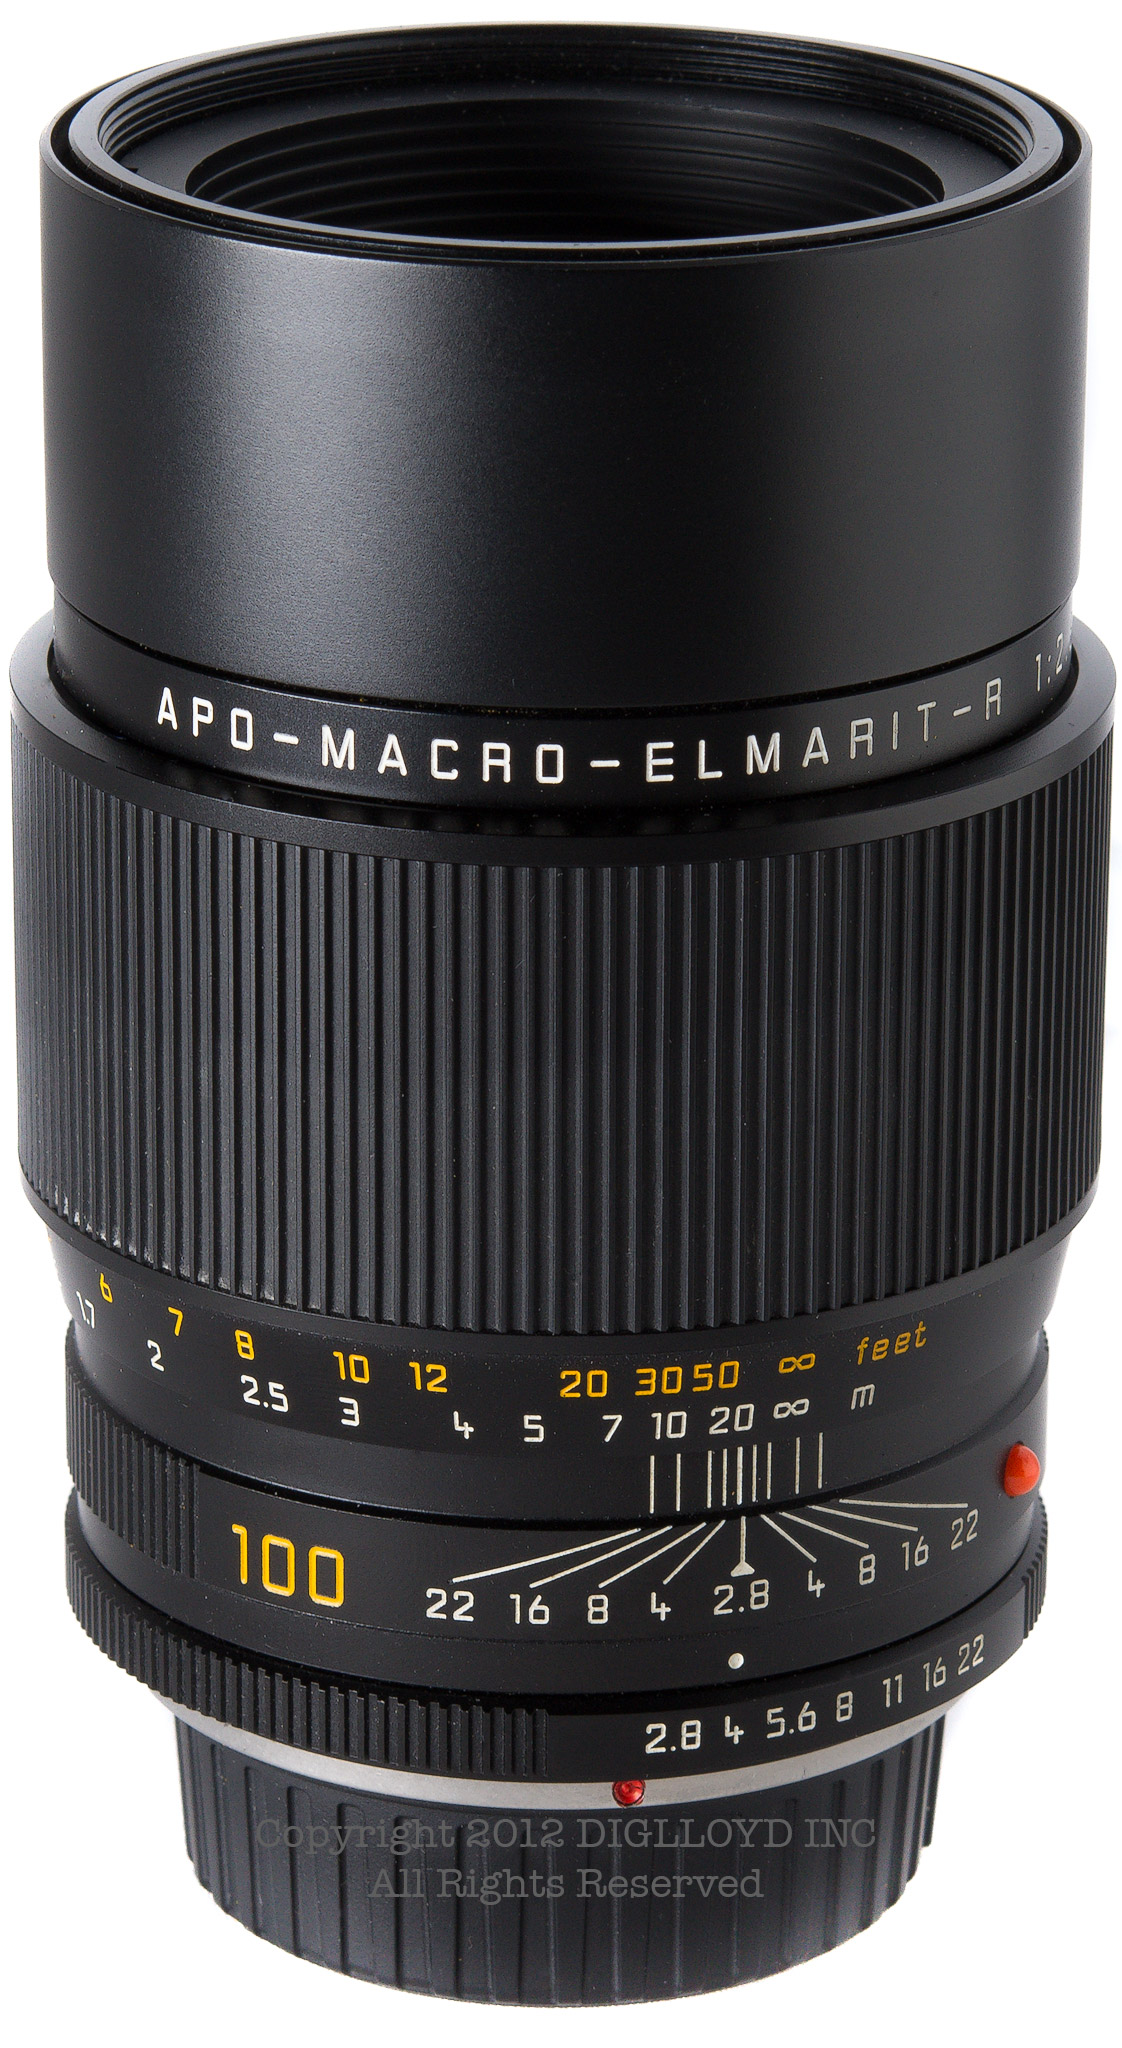 image of Leica 100mm f/2.8 APO-Macro-Elmarit-R